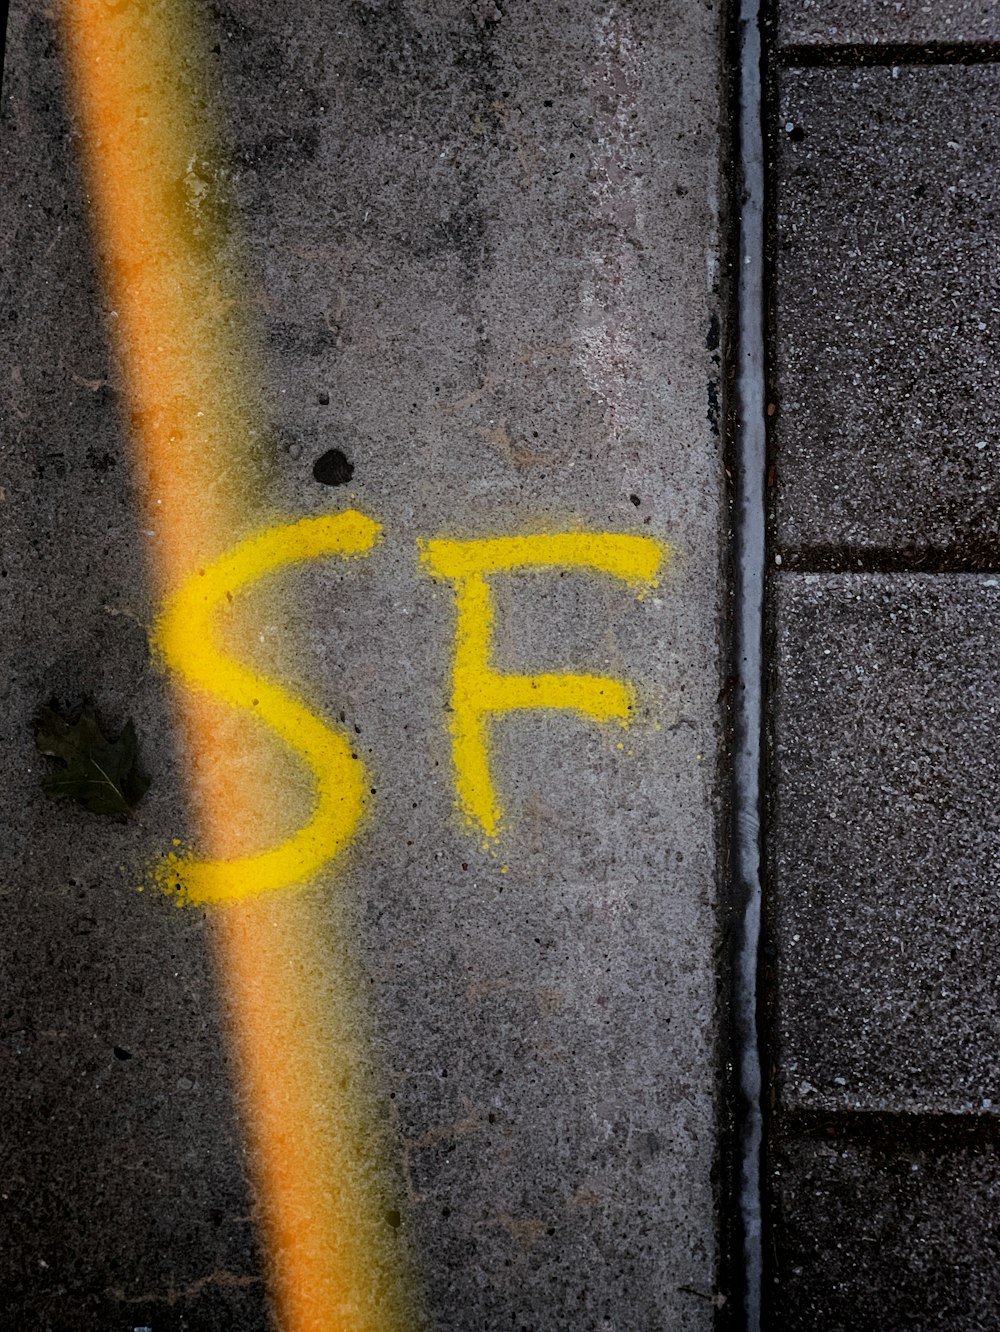 SF paint concrete pavement